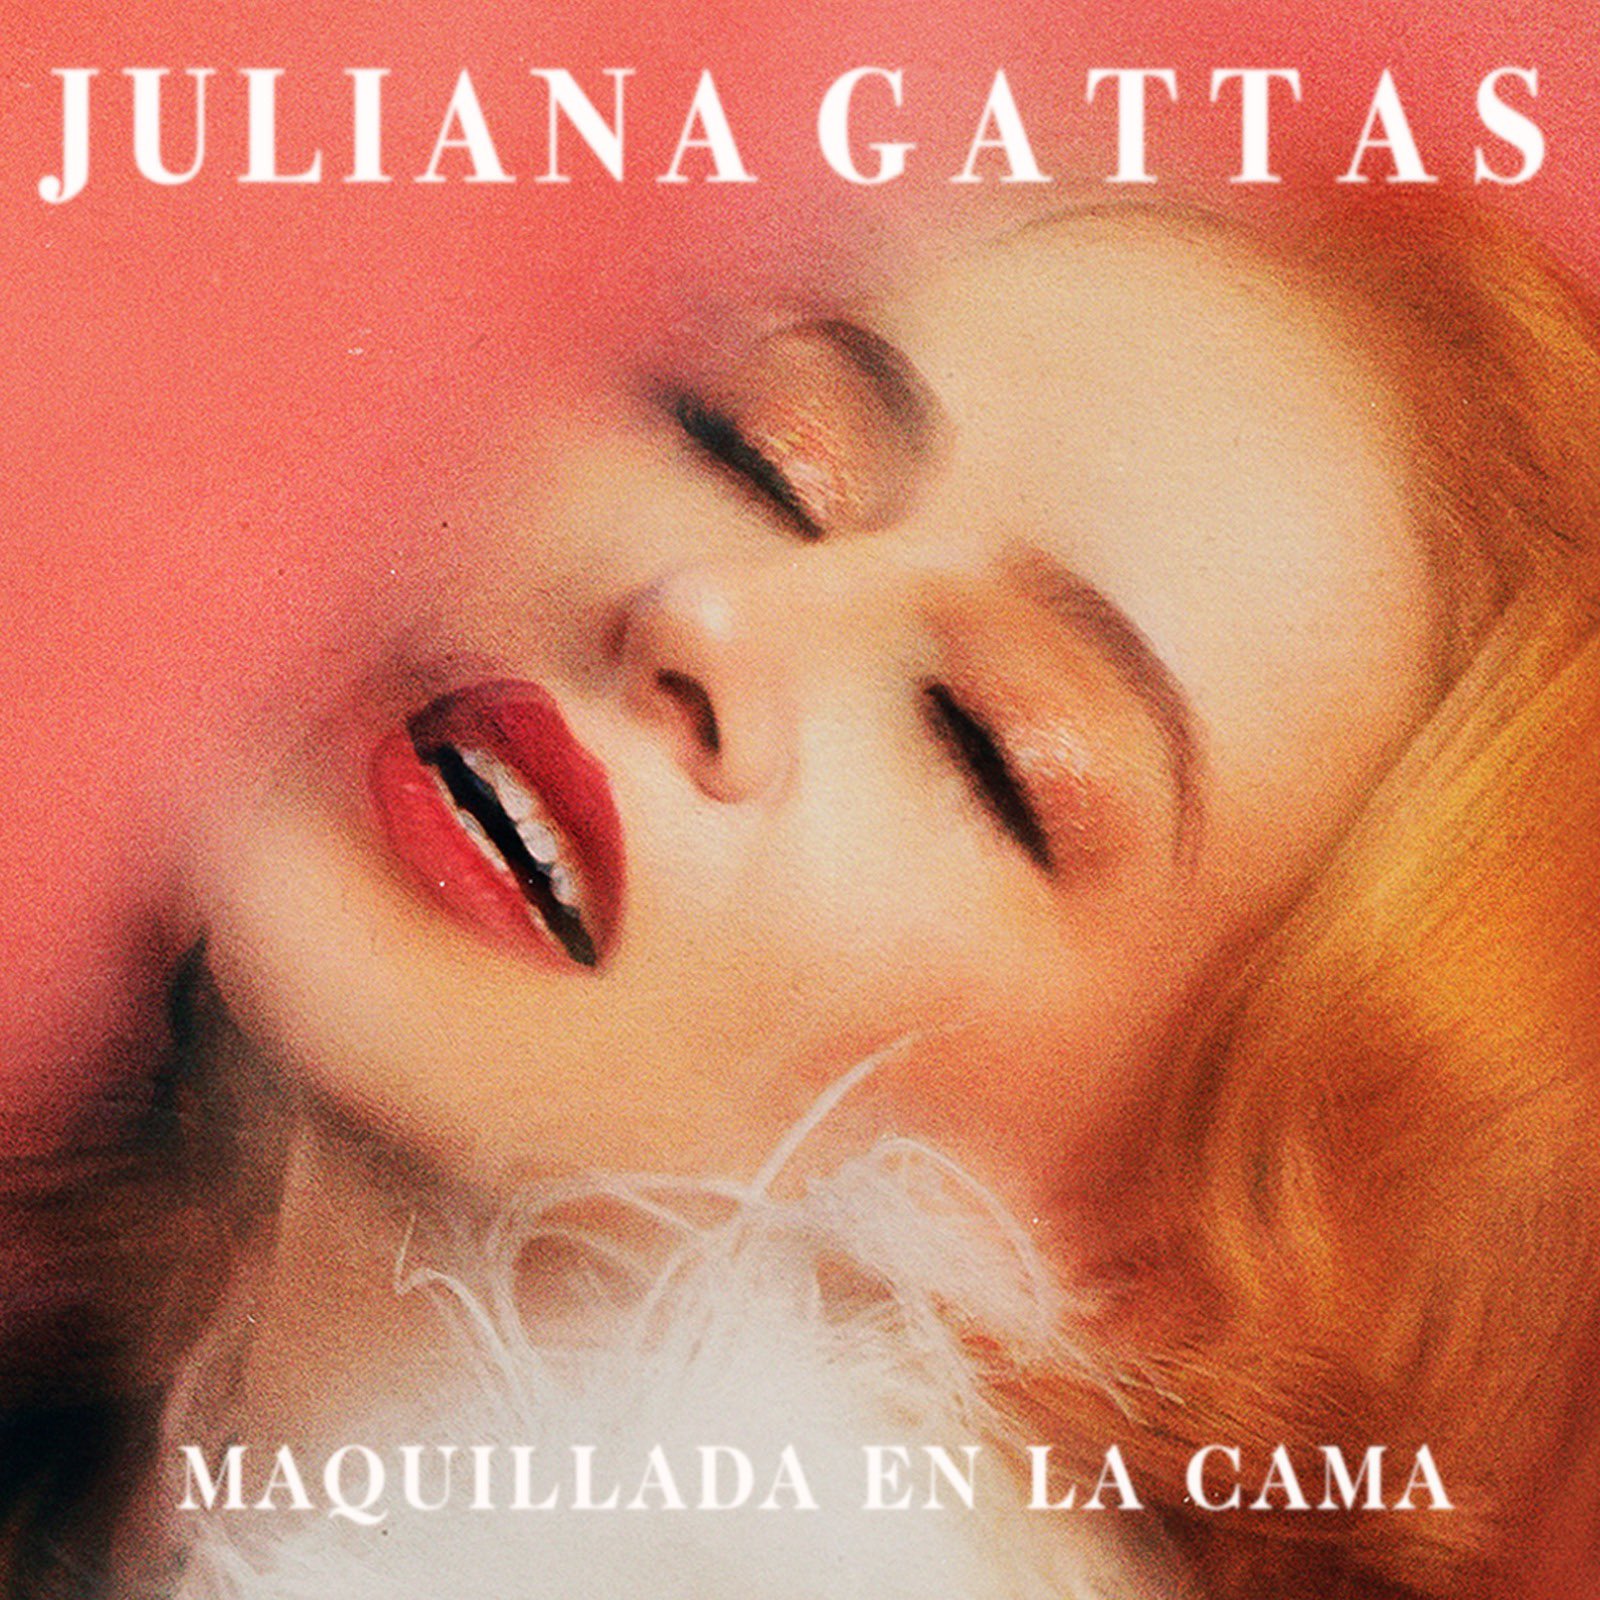 Juliana Gattas Maquillada en la Cama cover artwork